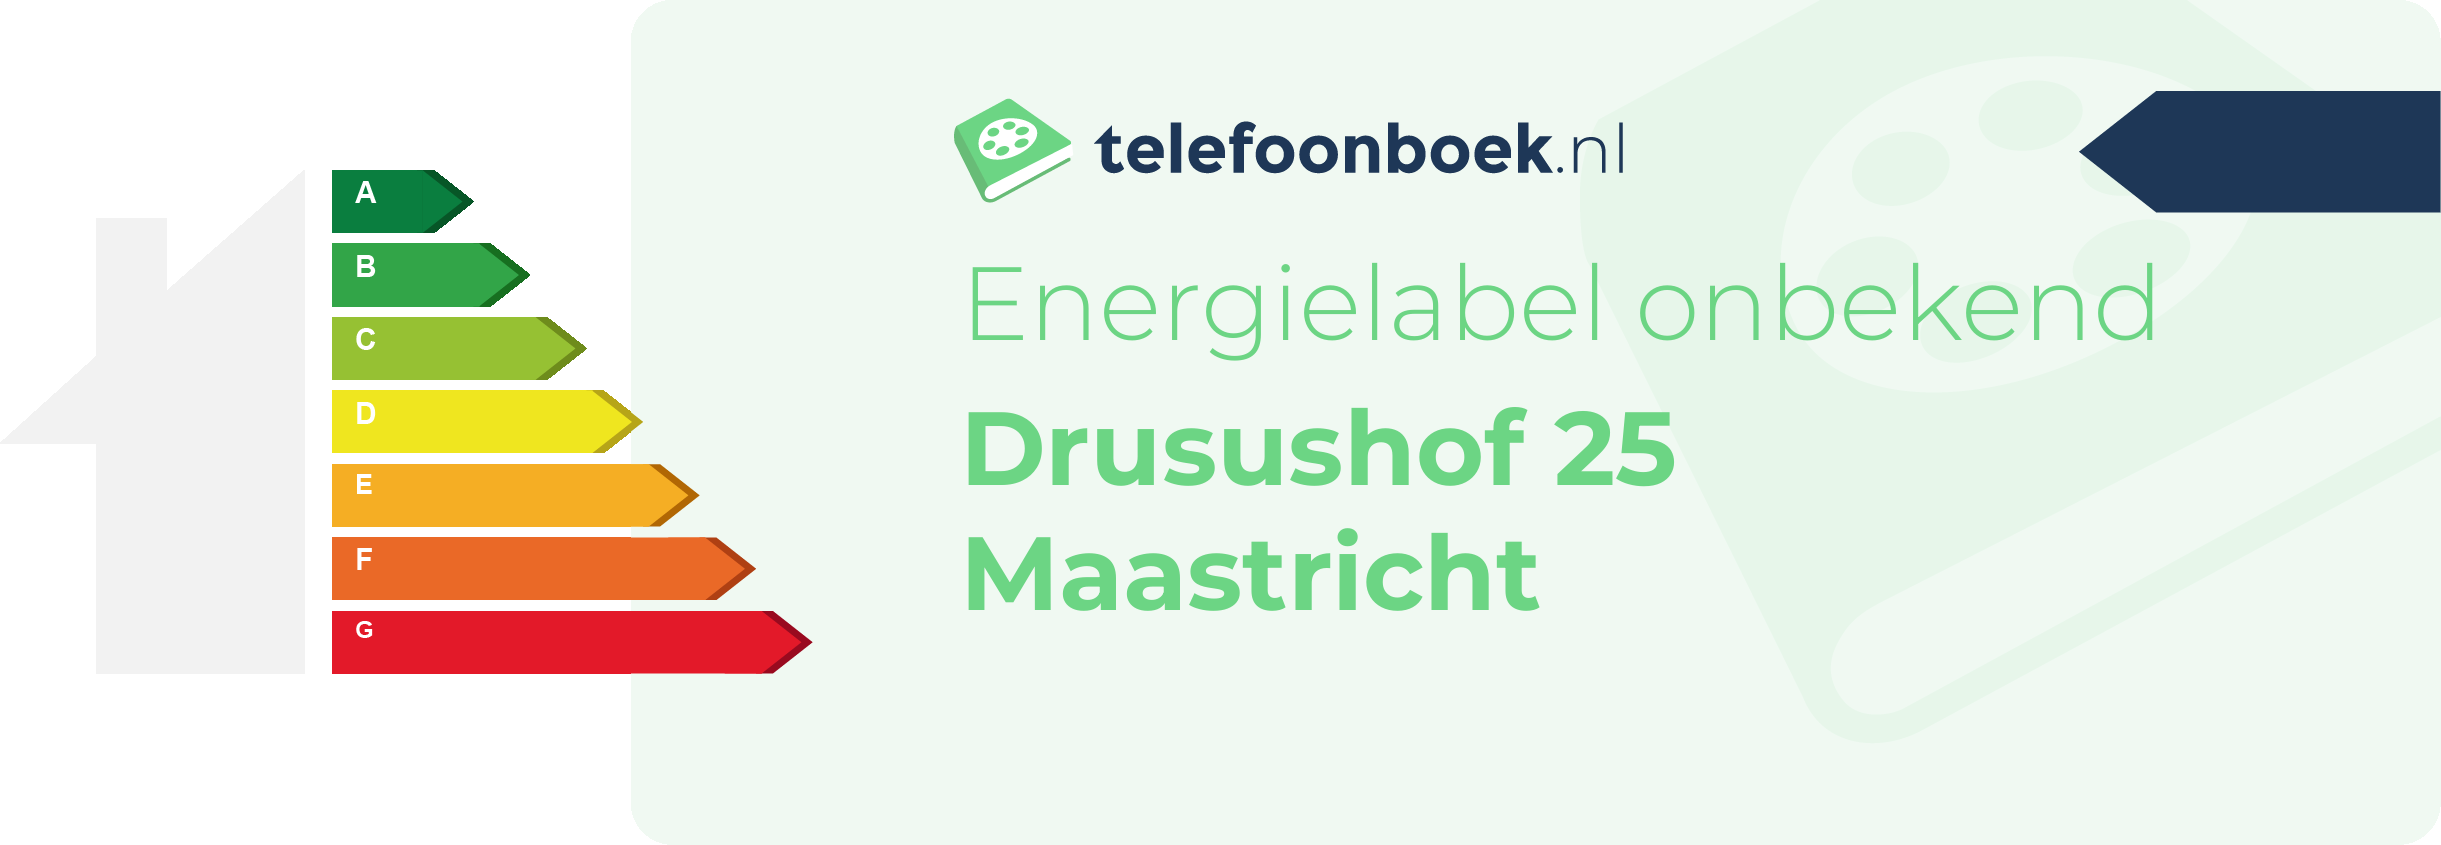 Energielabel Drusushof 25 Maastricht